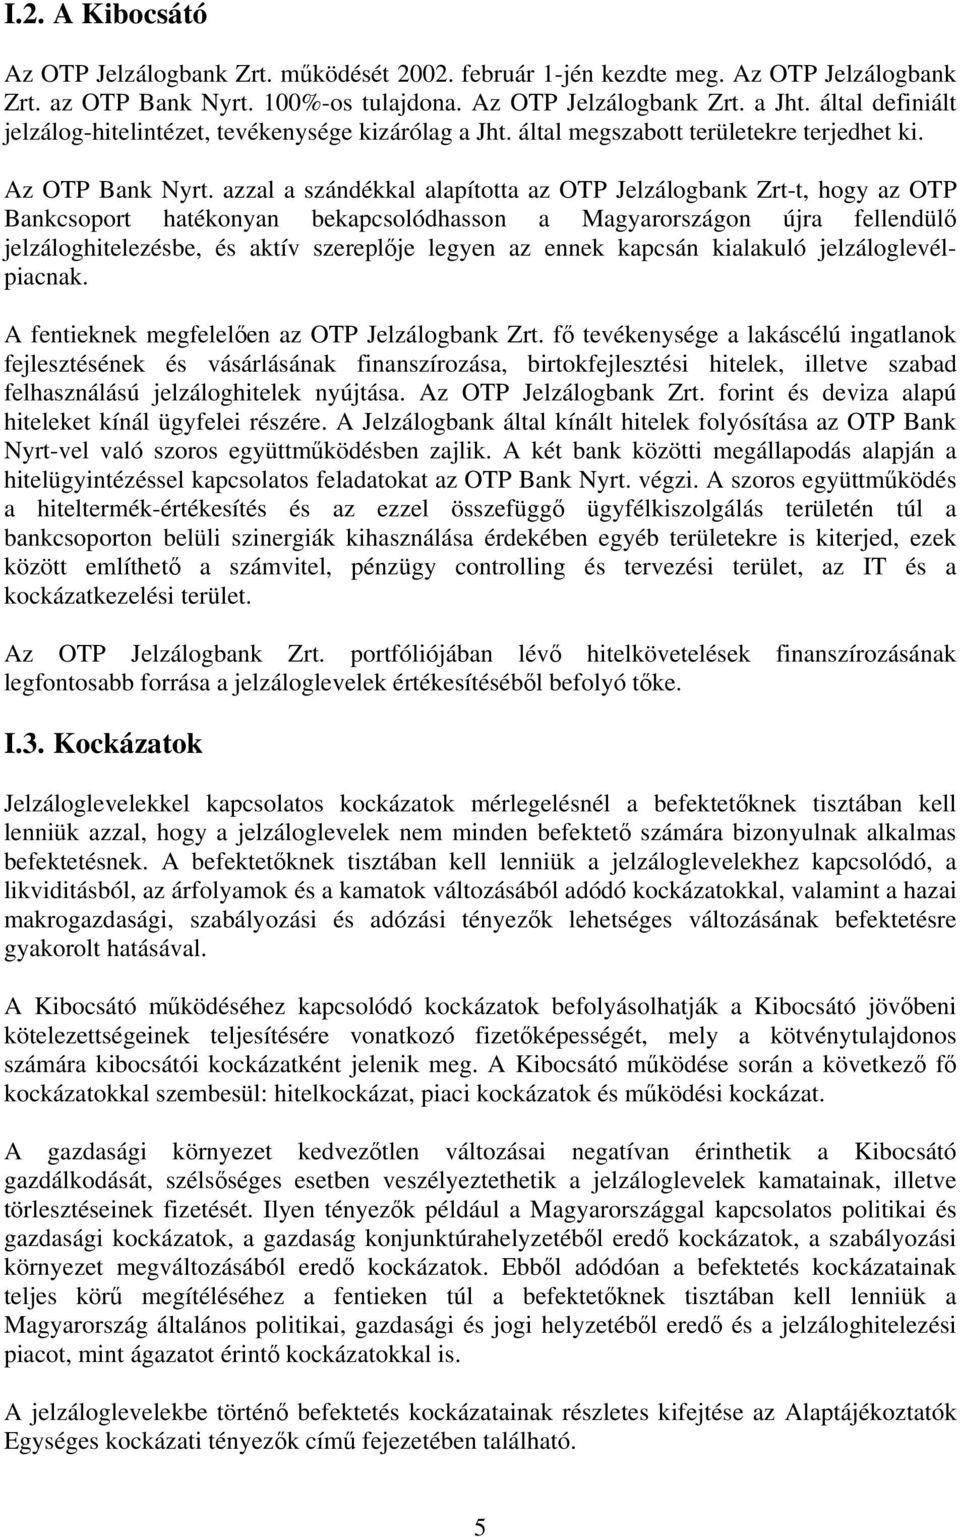 azzal a szándékkal alapította az OTP Jelzálogbank Zrt-t, hogy az OTP Bankcsoport hatékonyan bekapcsolódhasson a Magyarországon újra fellendülő jelzáloghitelezésbe, és aktív szereplője legyen az ennek